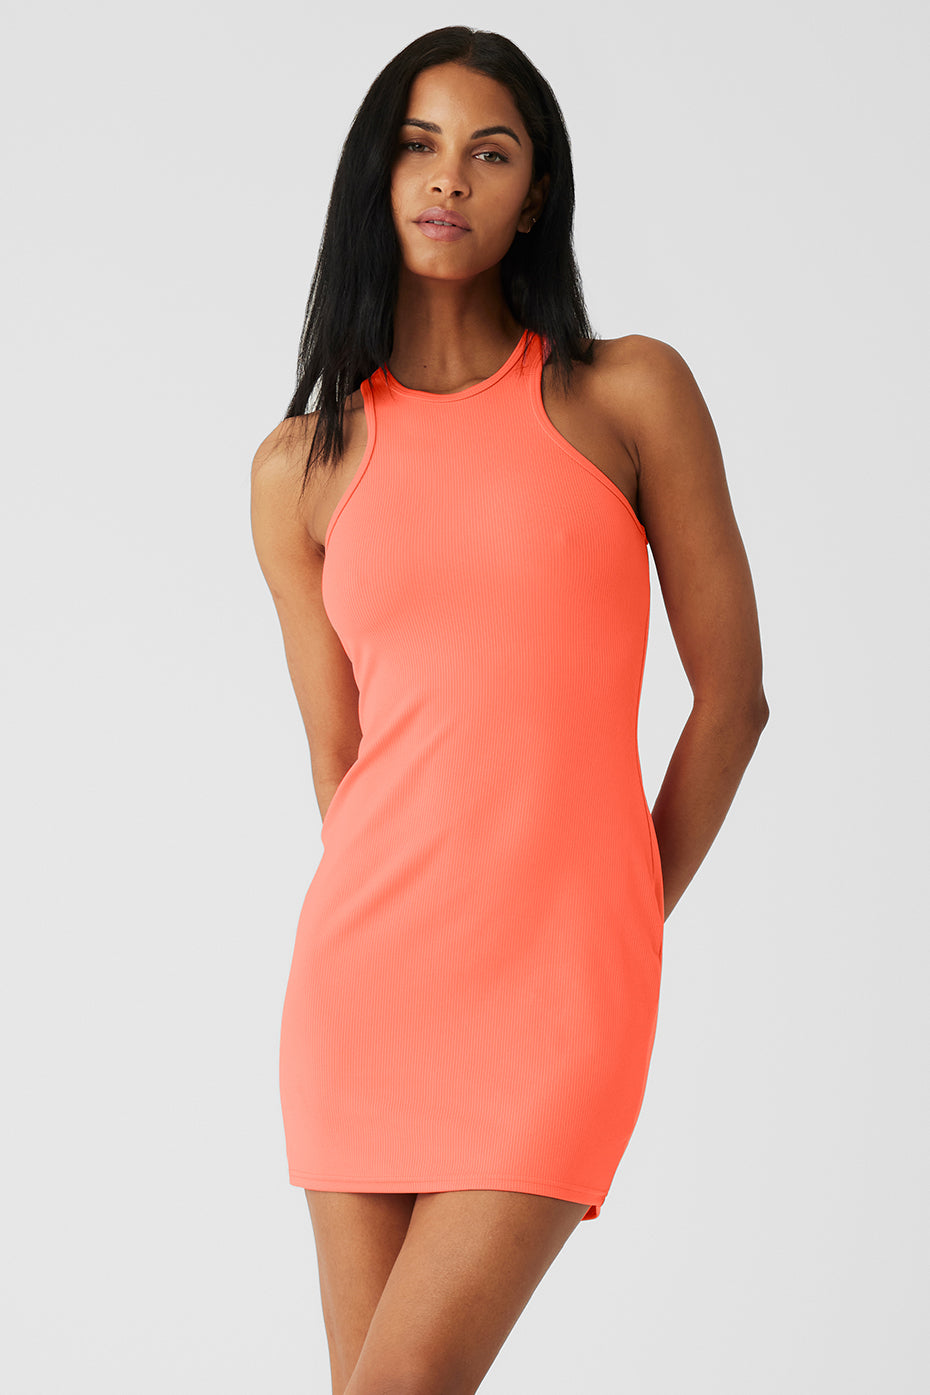 Alosoft Showcase Dress - Candy Orange